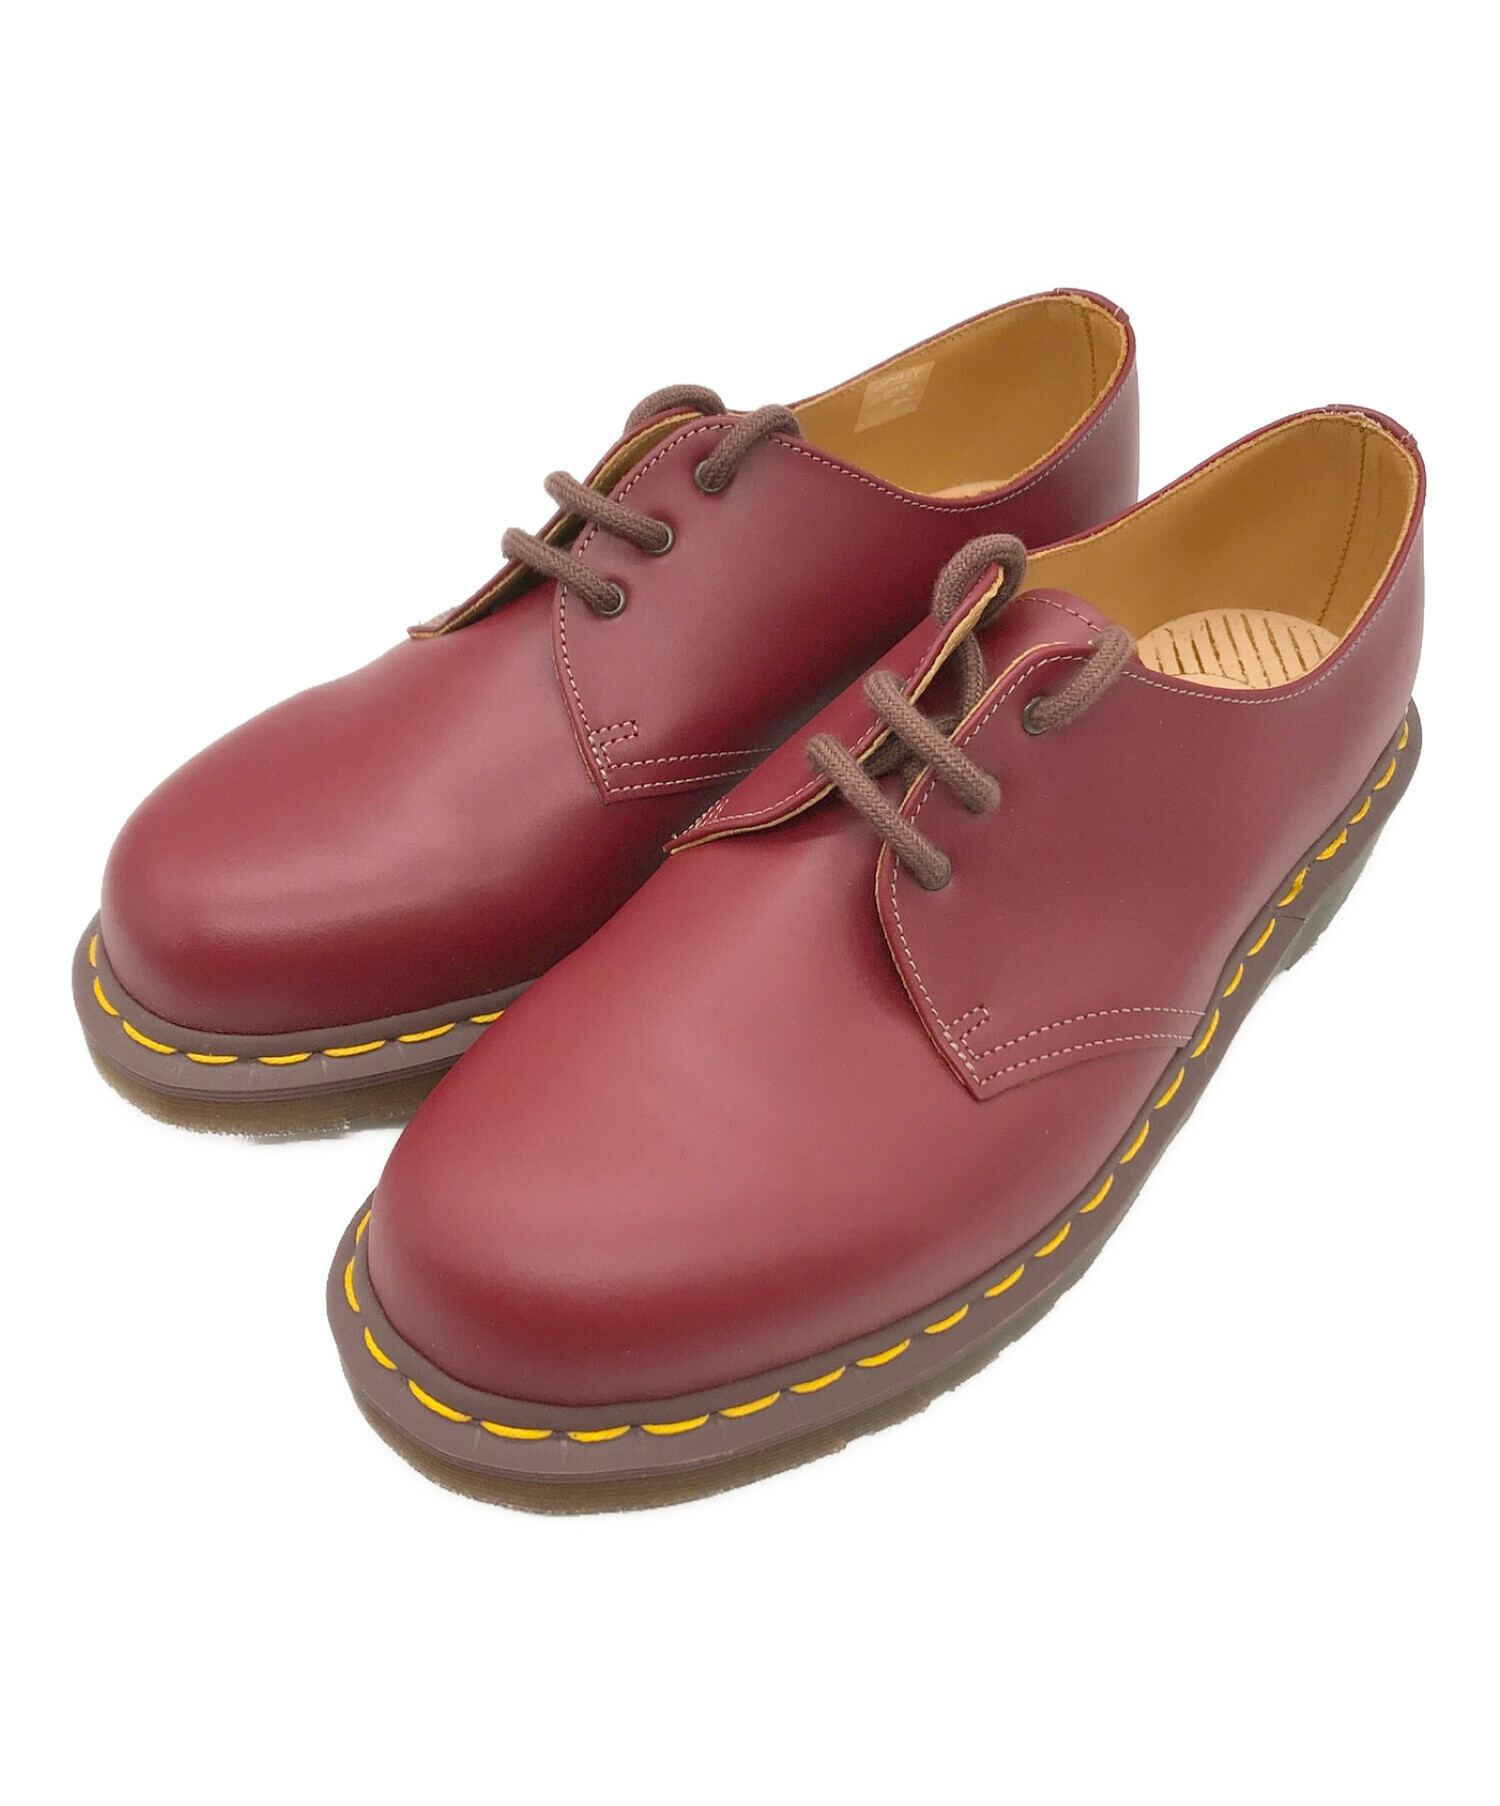 ドクターマーチン Dr.Martens シューズ 1461 3ホール ローカット レザーシューズ 革靴 メンズ UK7 EU41 US8(26cm相当) ブラウン